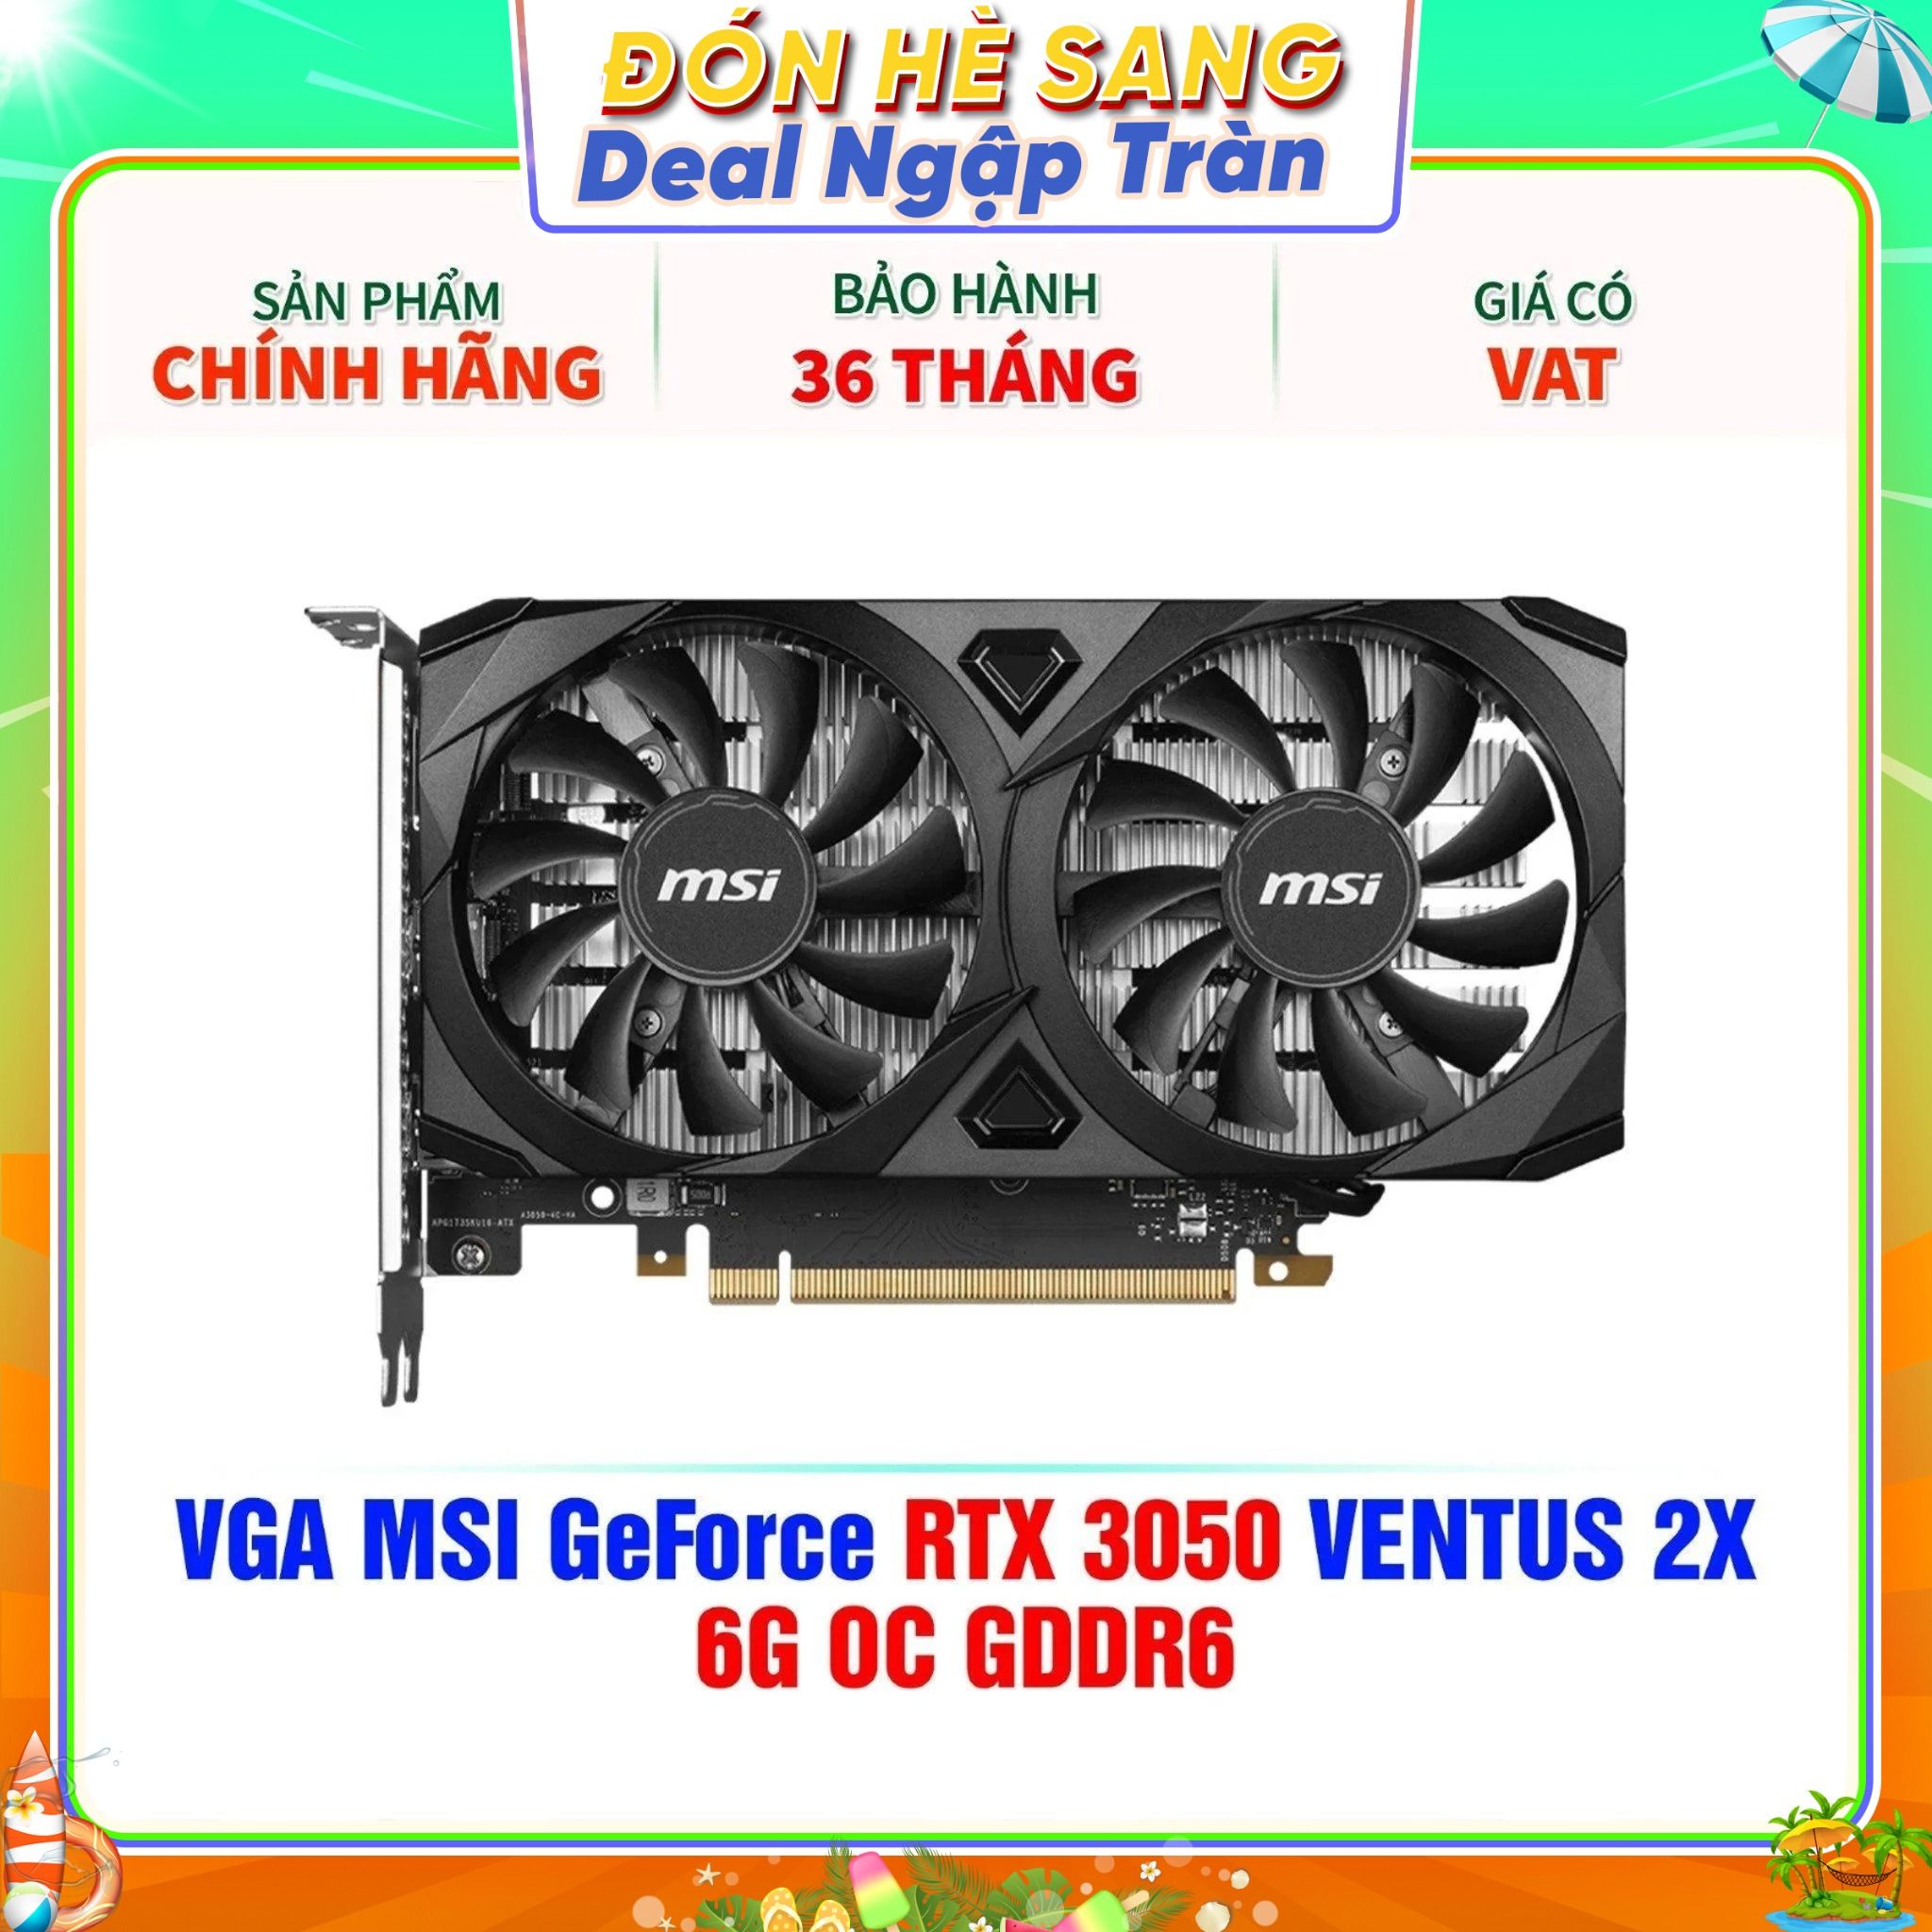  VGA MSI GeForce RTX 3050 VENTUS 2X 6G OC GDDR6 